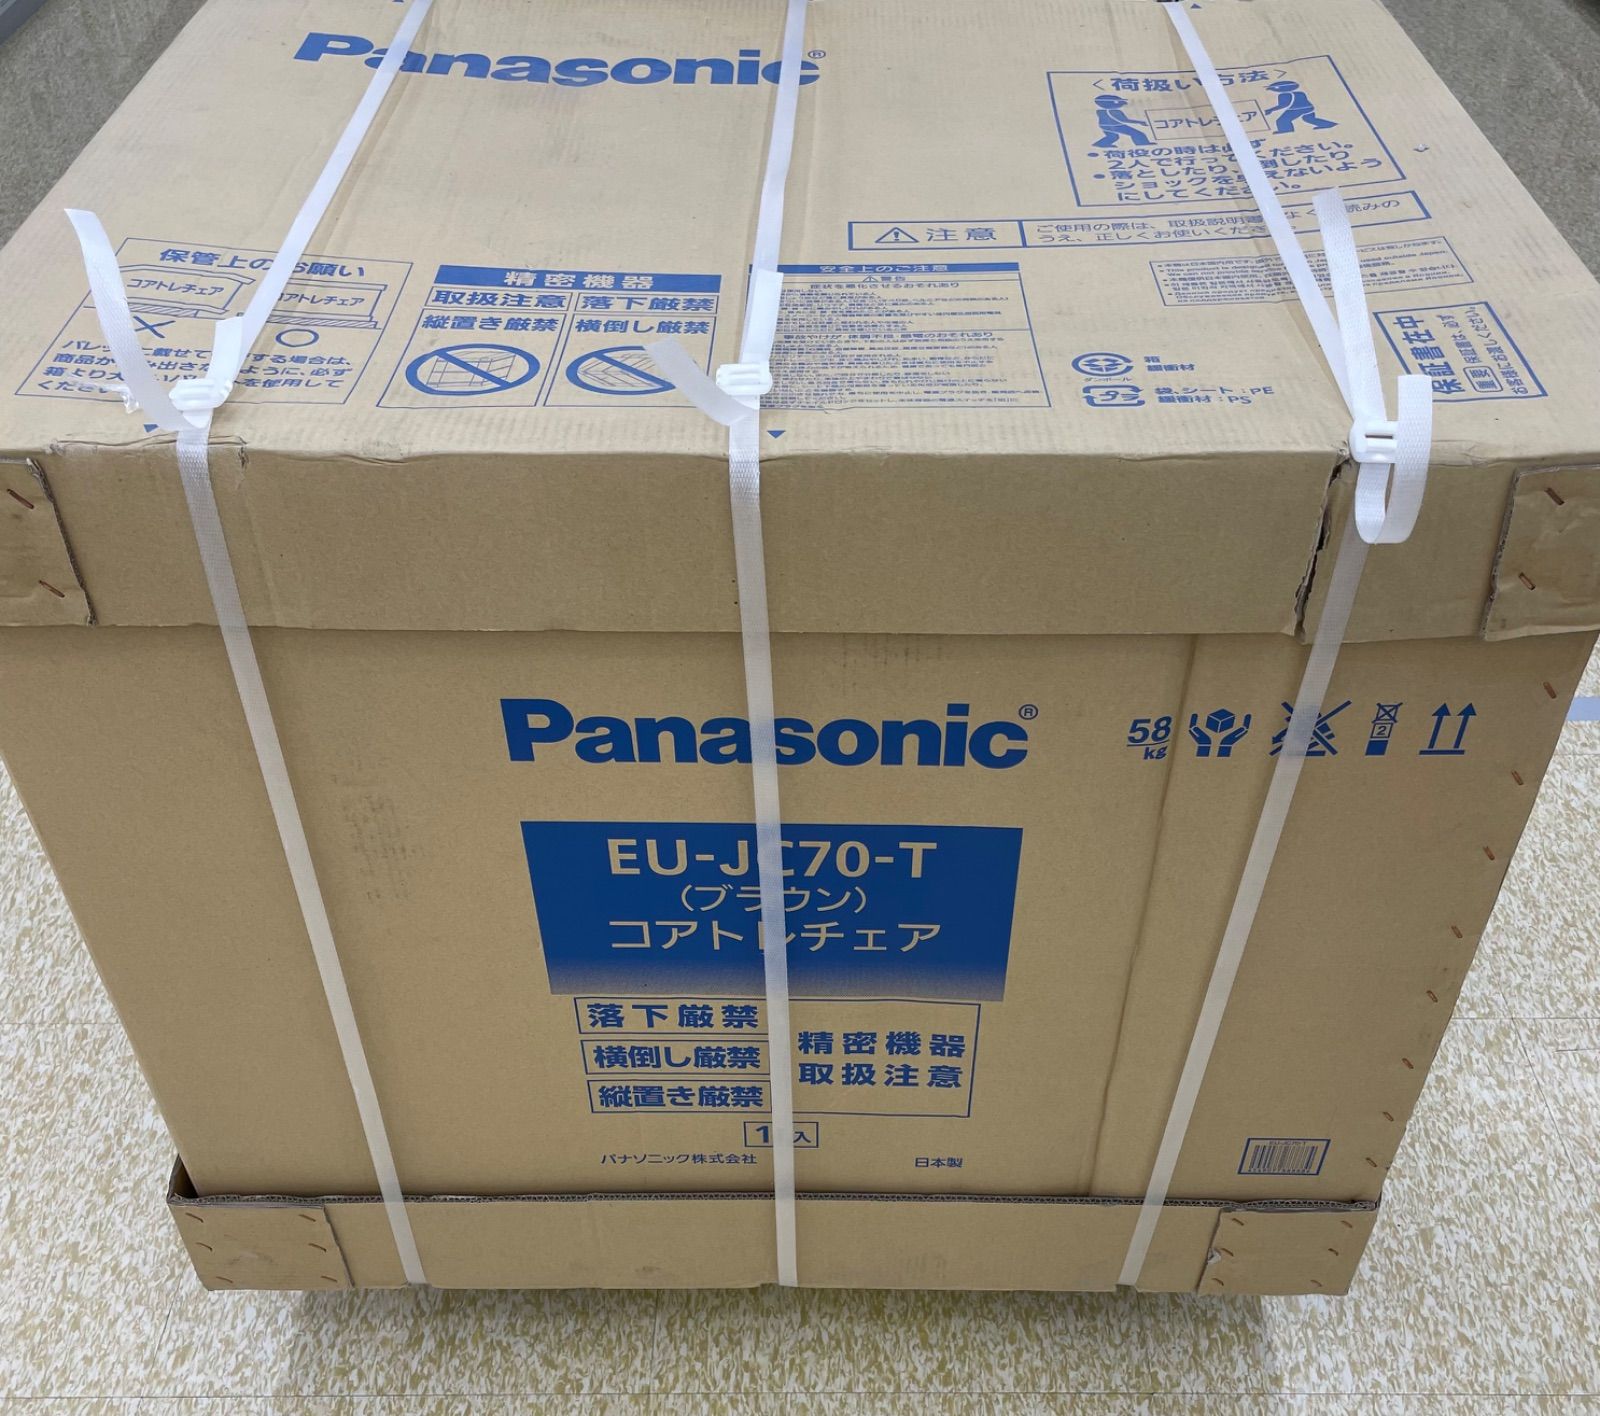 Panasonic コアトレチェア EU-JC70-T ブラウン色 - Shop Dream⭐︎Run ...